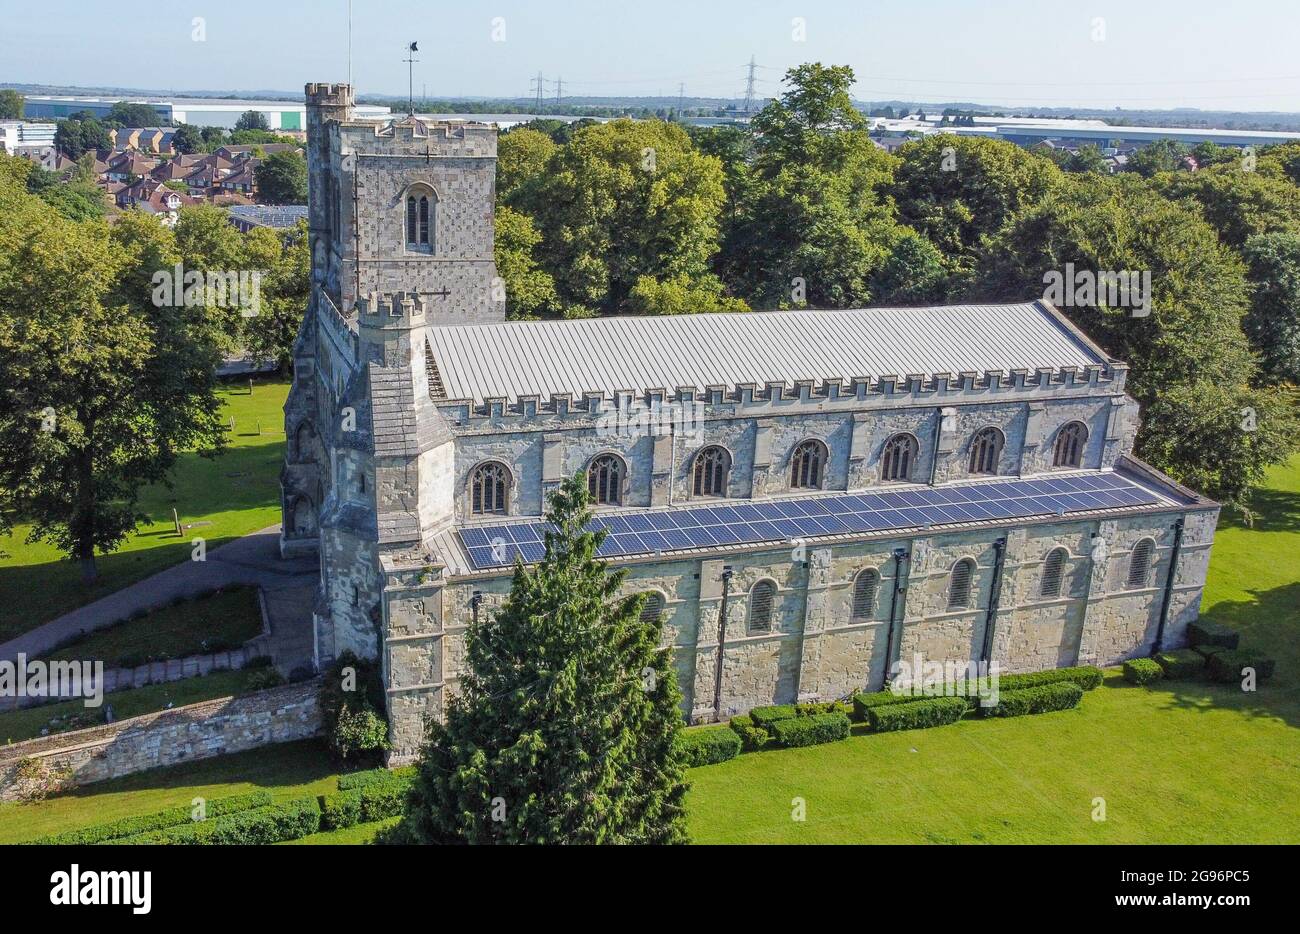 DUNSTAB, ROYAUME-UNI - 16 juillet 2021 : photo en grand angle de l'église prieuré de Saint-Pierre à Dunstable, Royaume-Uni Banque D'Images